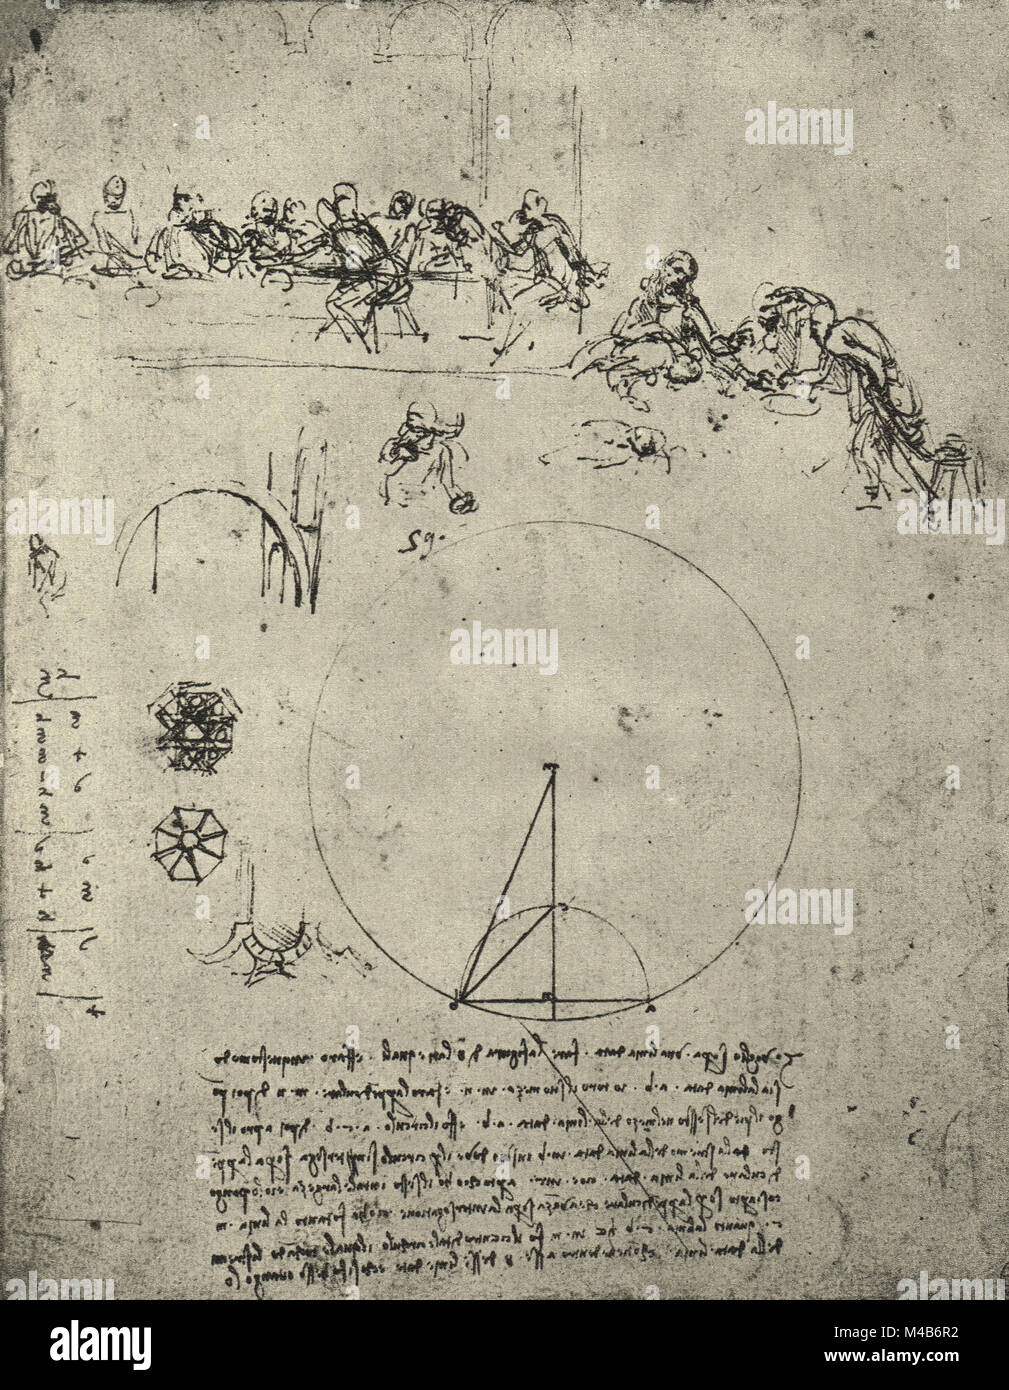 Étude pour la Dernière Cène, et les chiffres et les calculs mathématiques, dessiné par Léonard de Vinci, vers 1495-97 Banque D'Images